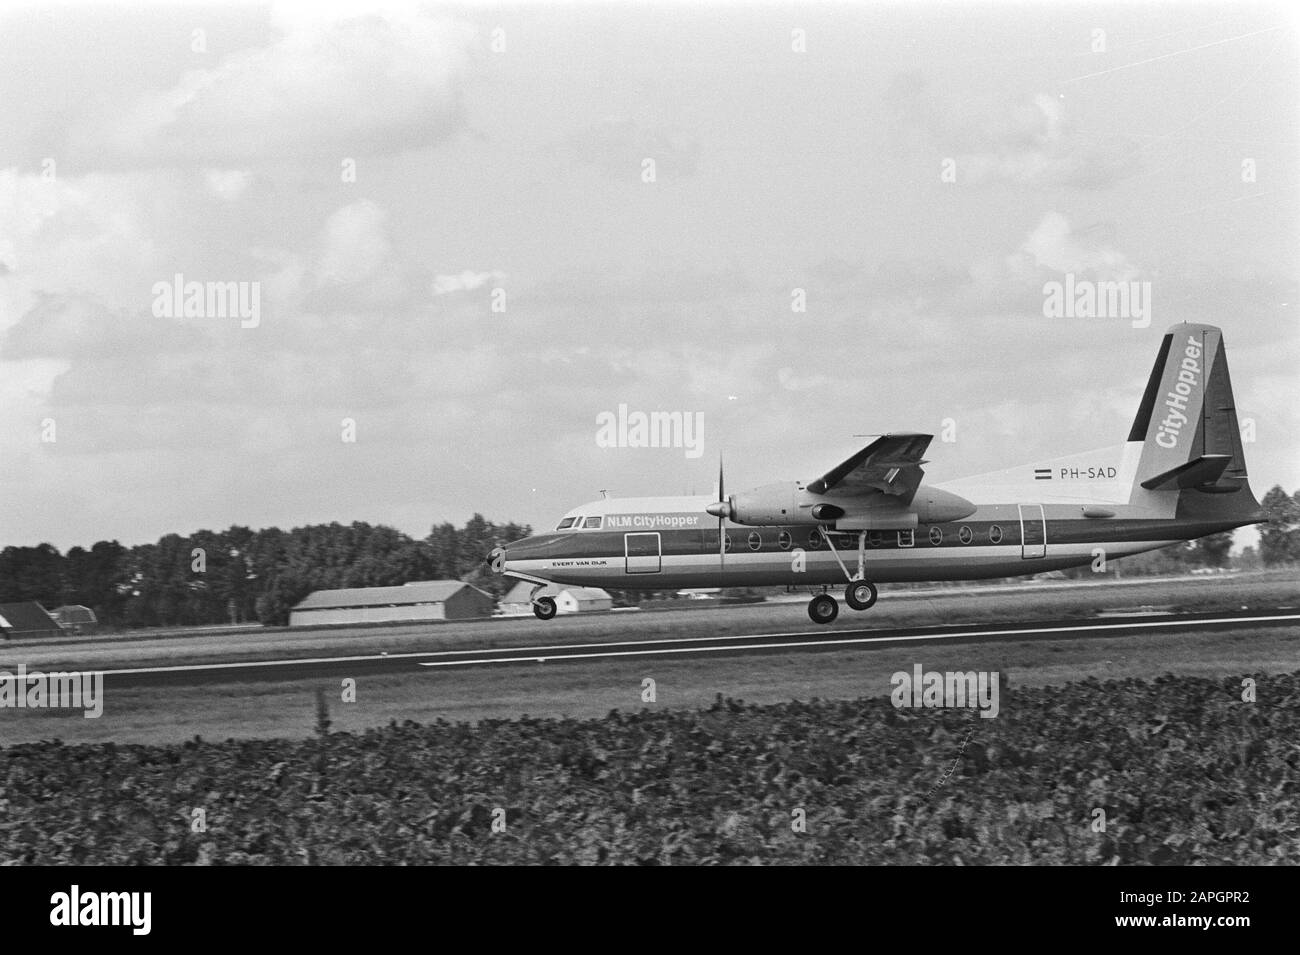 Concorde (aereo) di nuovo (seconda volta) a Schiphol; 5a, 6a: Atterraggio di KLM-Cityhopper (allevatore F27) Data: 14 agosto 1982 luogo: Noord-Holland, Schiphol Parole Chiave: Atterraggi, aereo Nome personale: Concorde Foto Stock